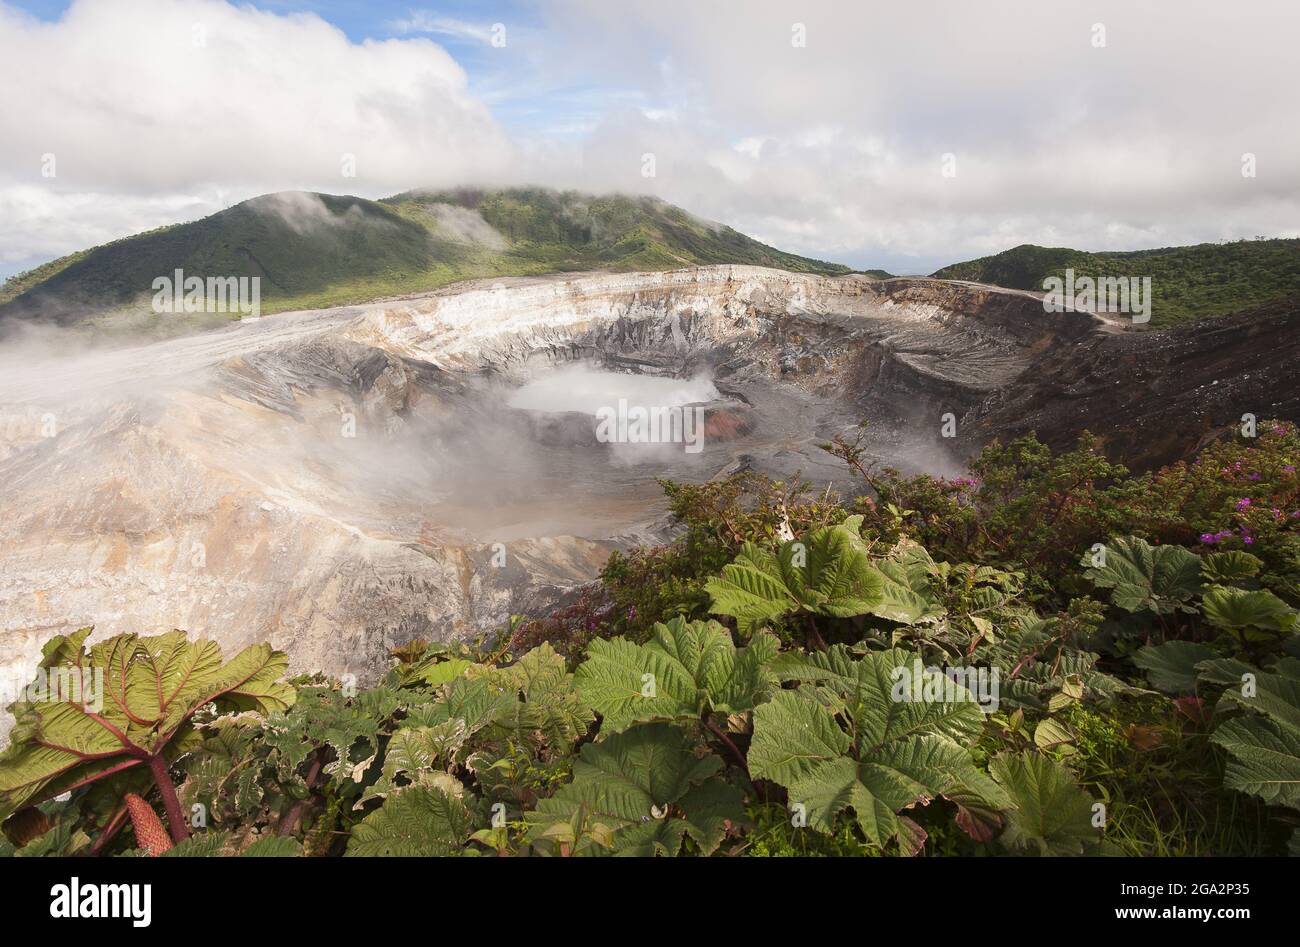 Vapori fumosi emessi dal cratere in cima al Vulcano Poas, uno stratovulcano attivo nel Parco Nazionale del Vulcano Poas Foto Stock